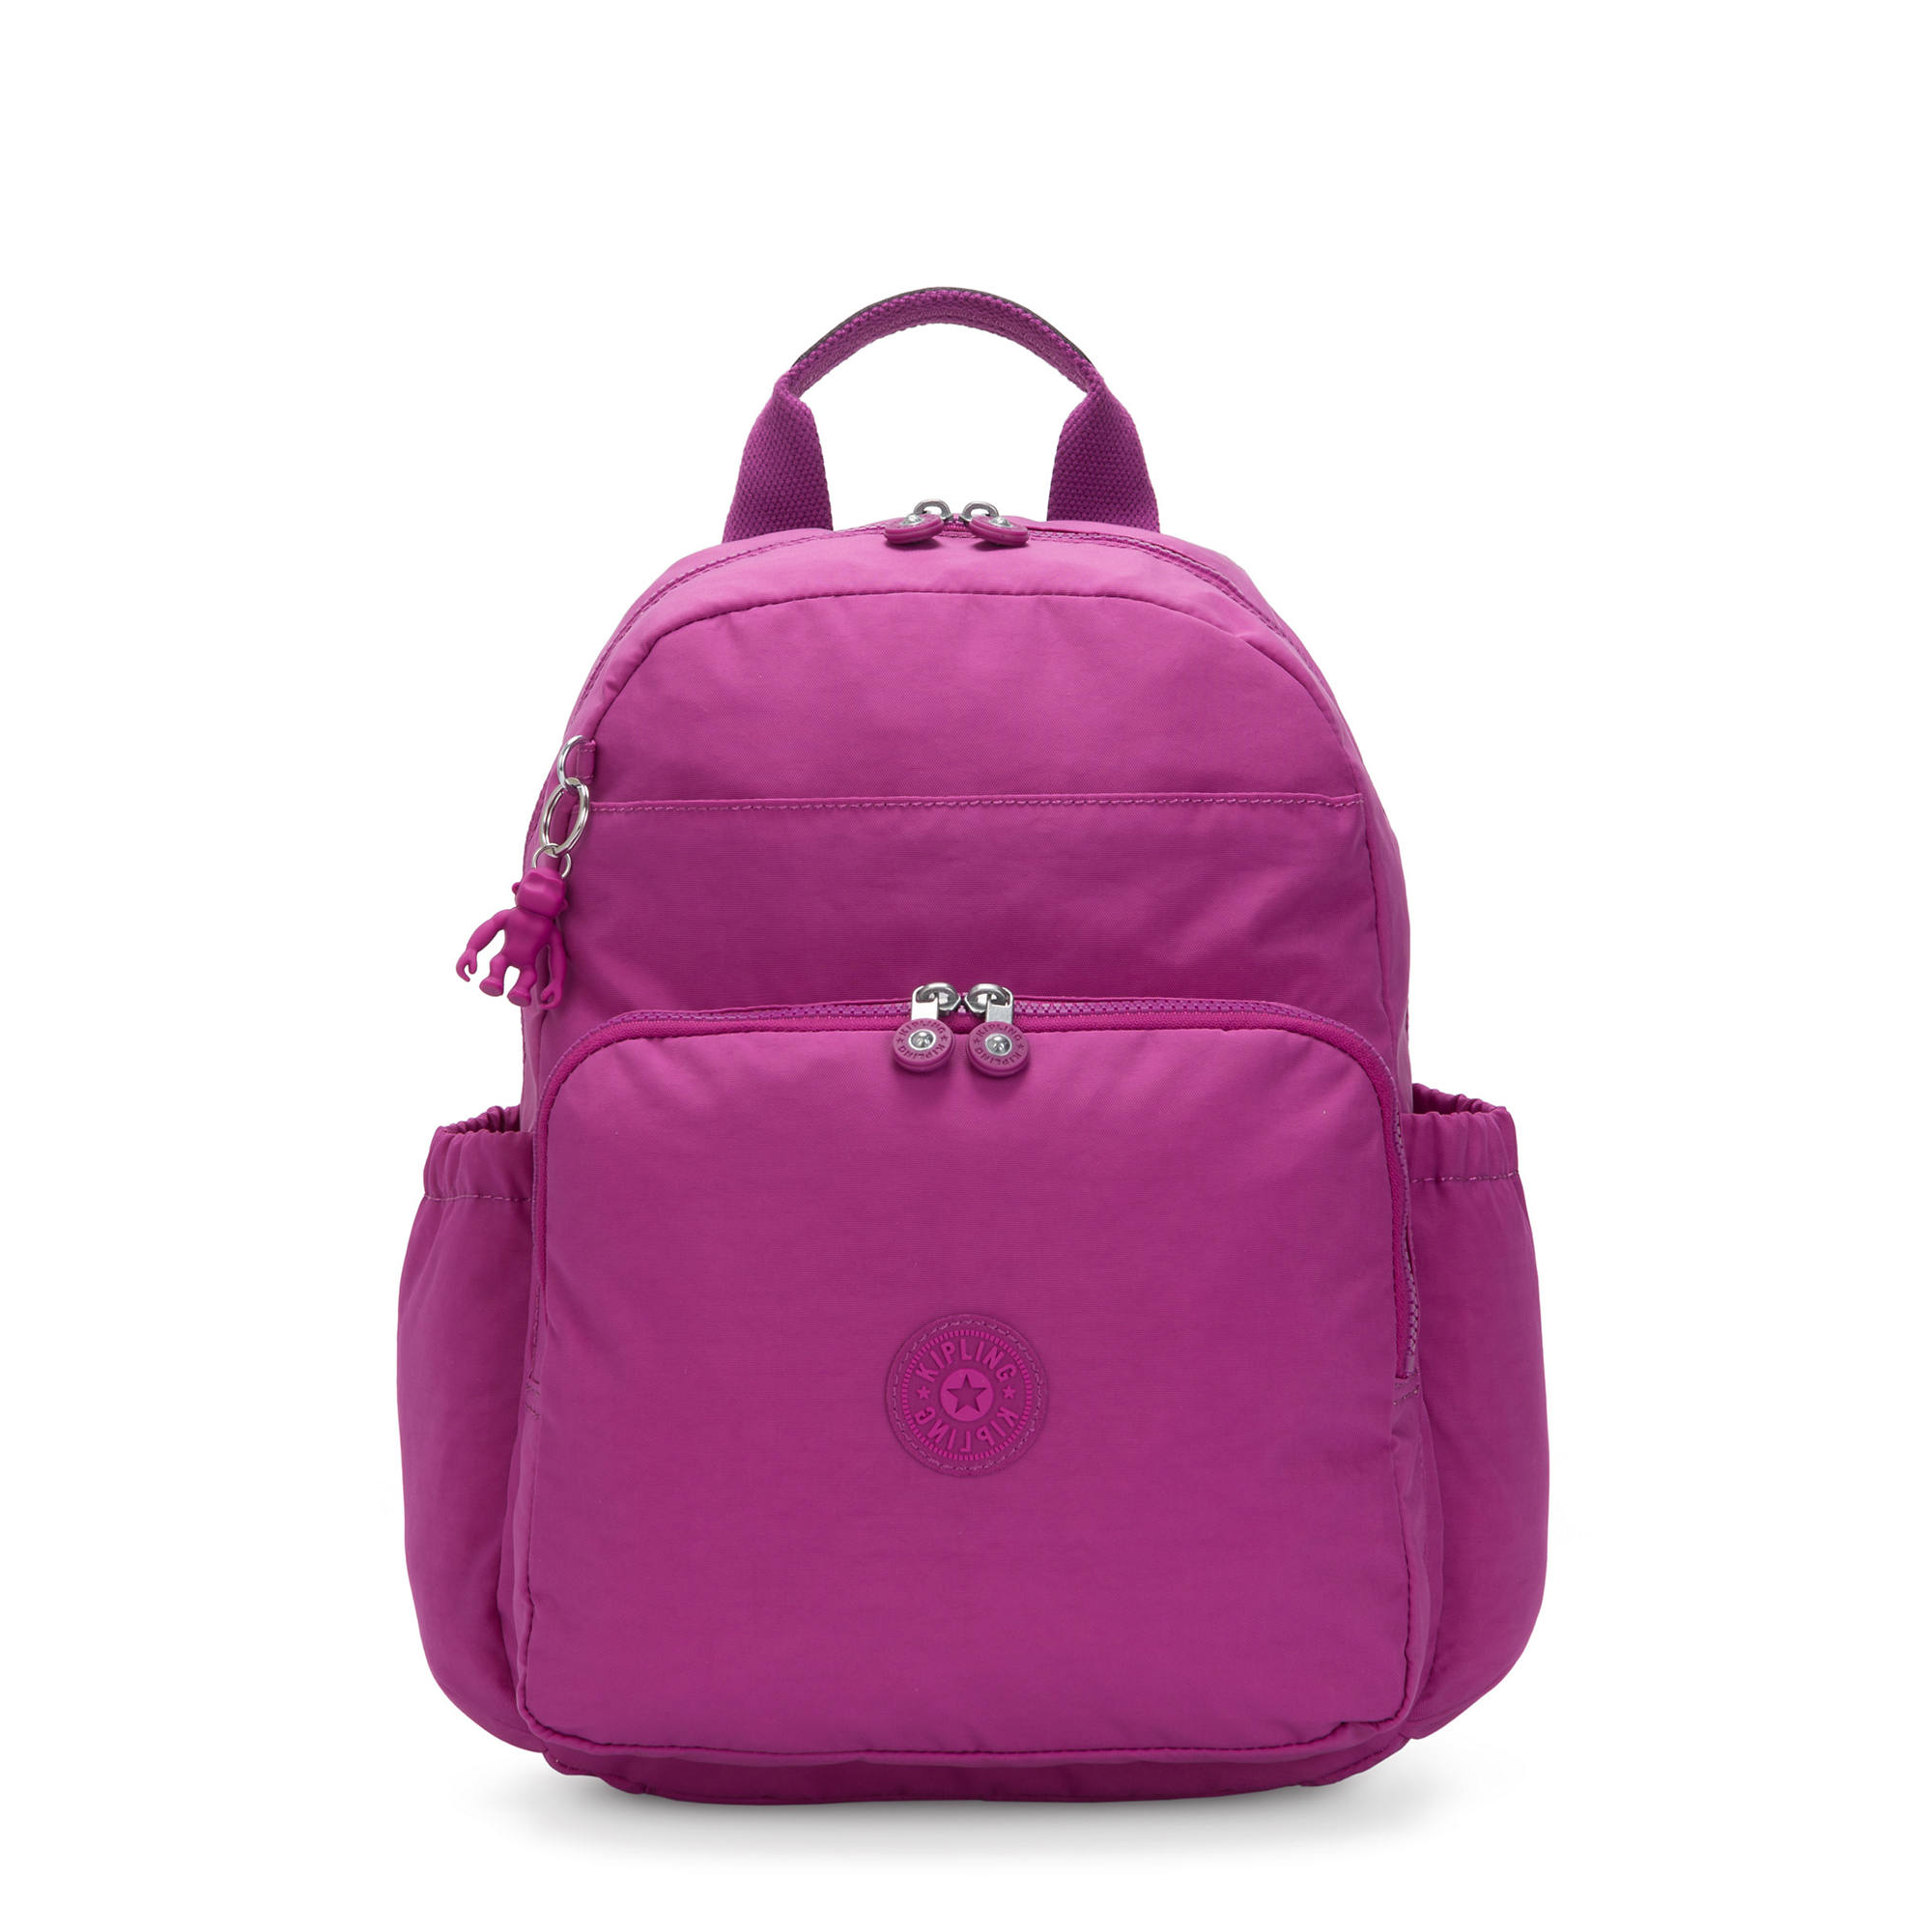 Kipling Maisie 13" Laptop Backpack